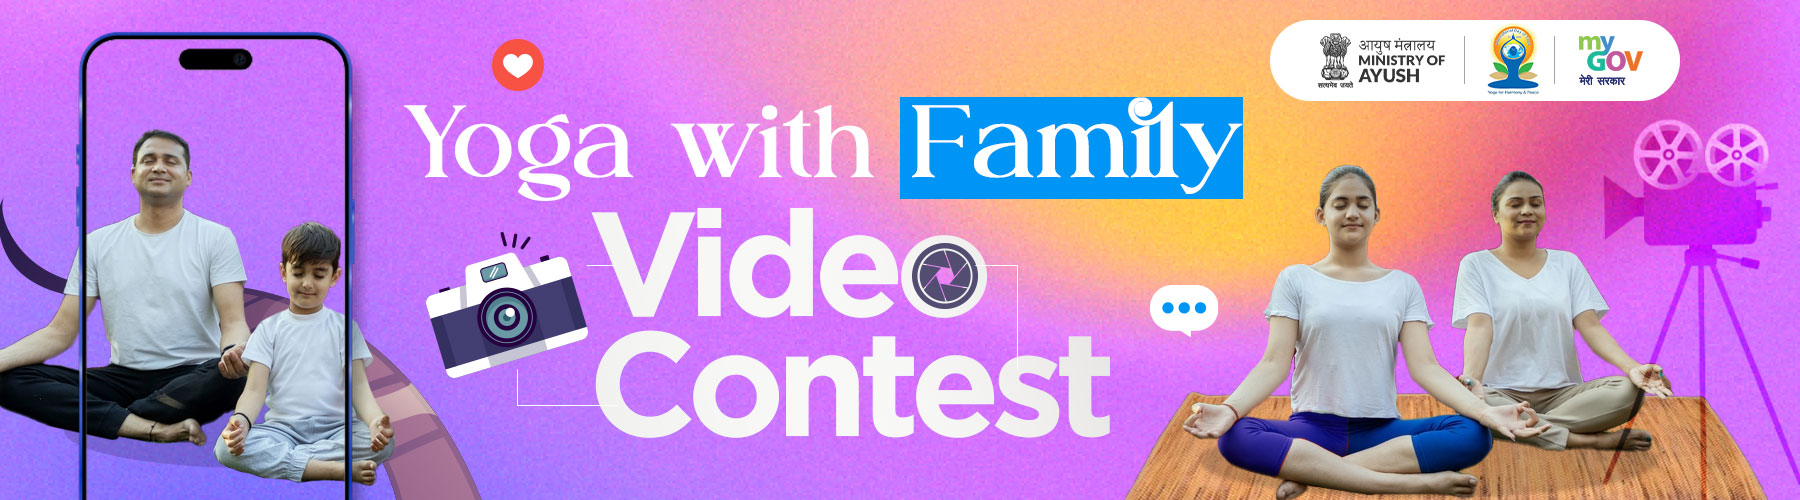 परिवार के साथ योग वीडियो प्रतियोगिता